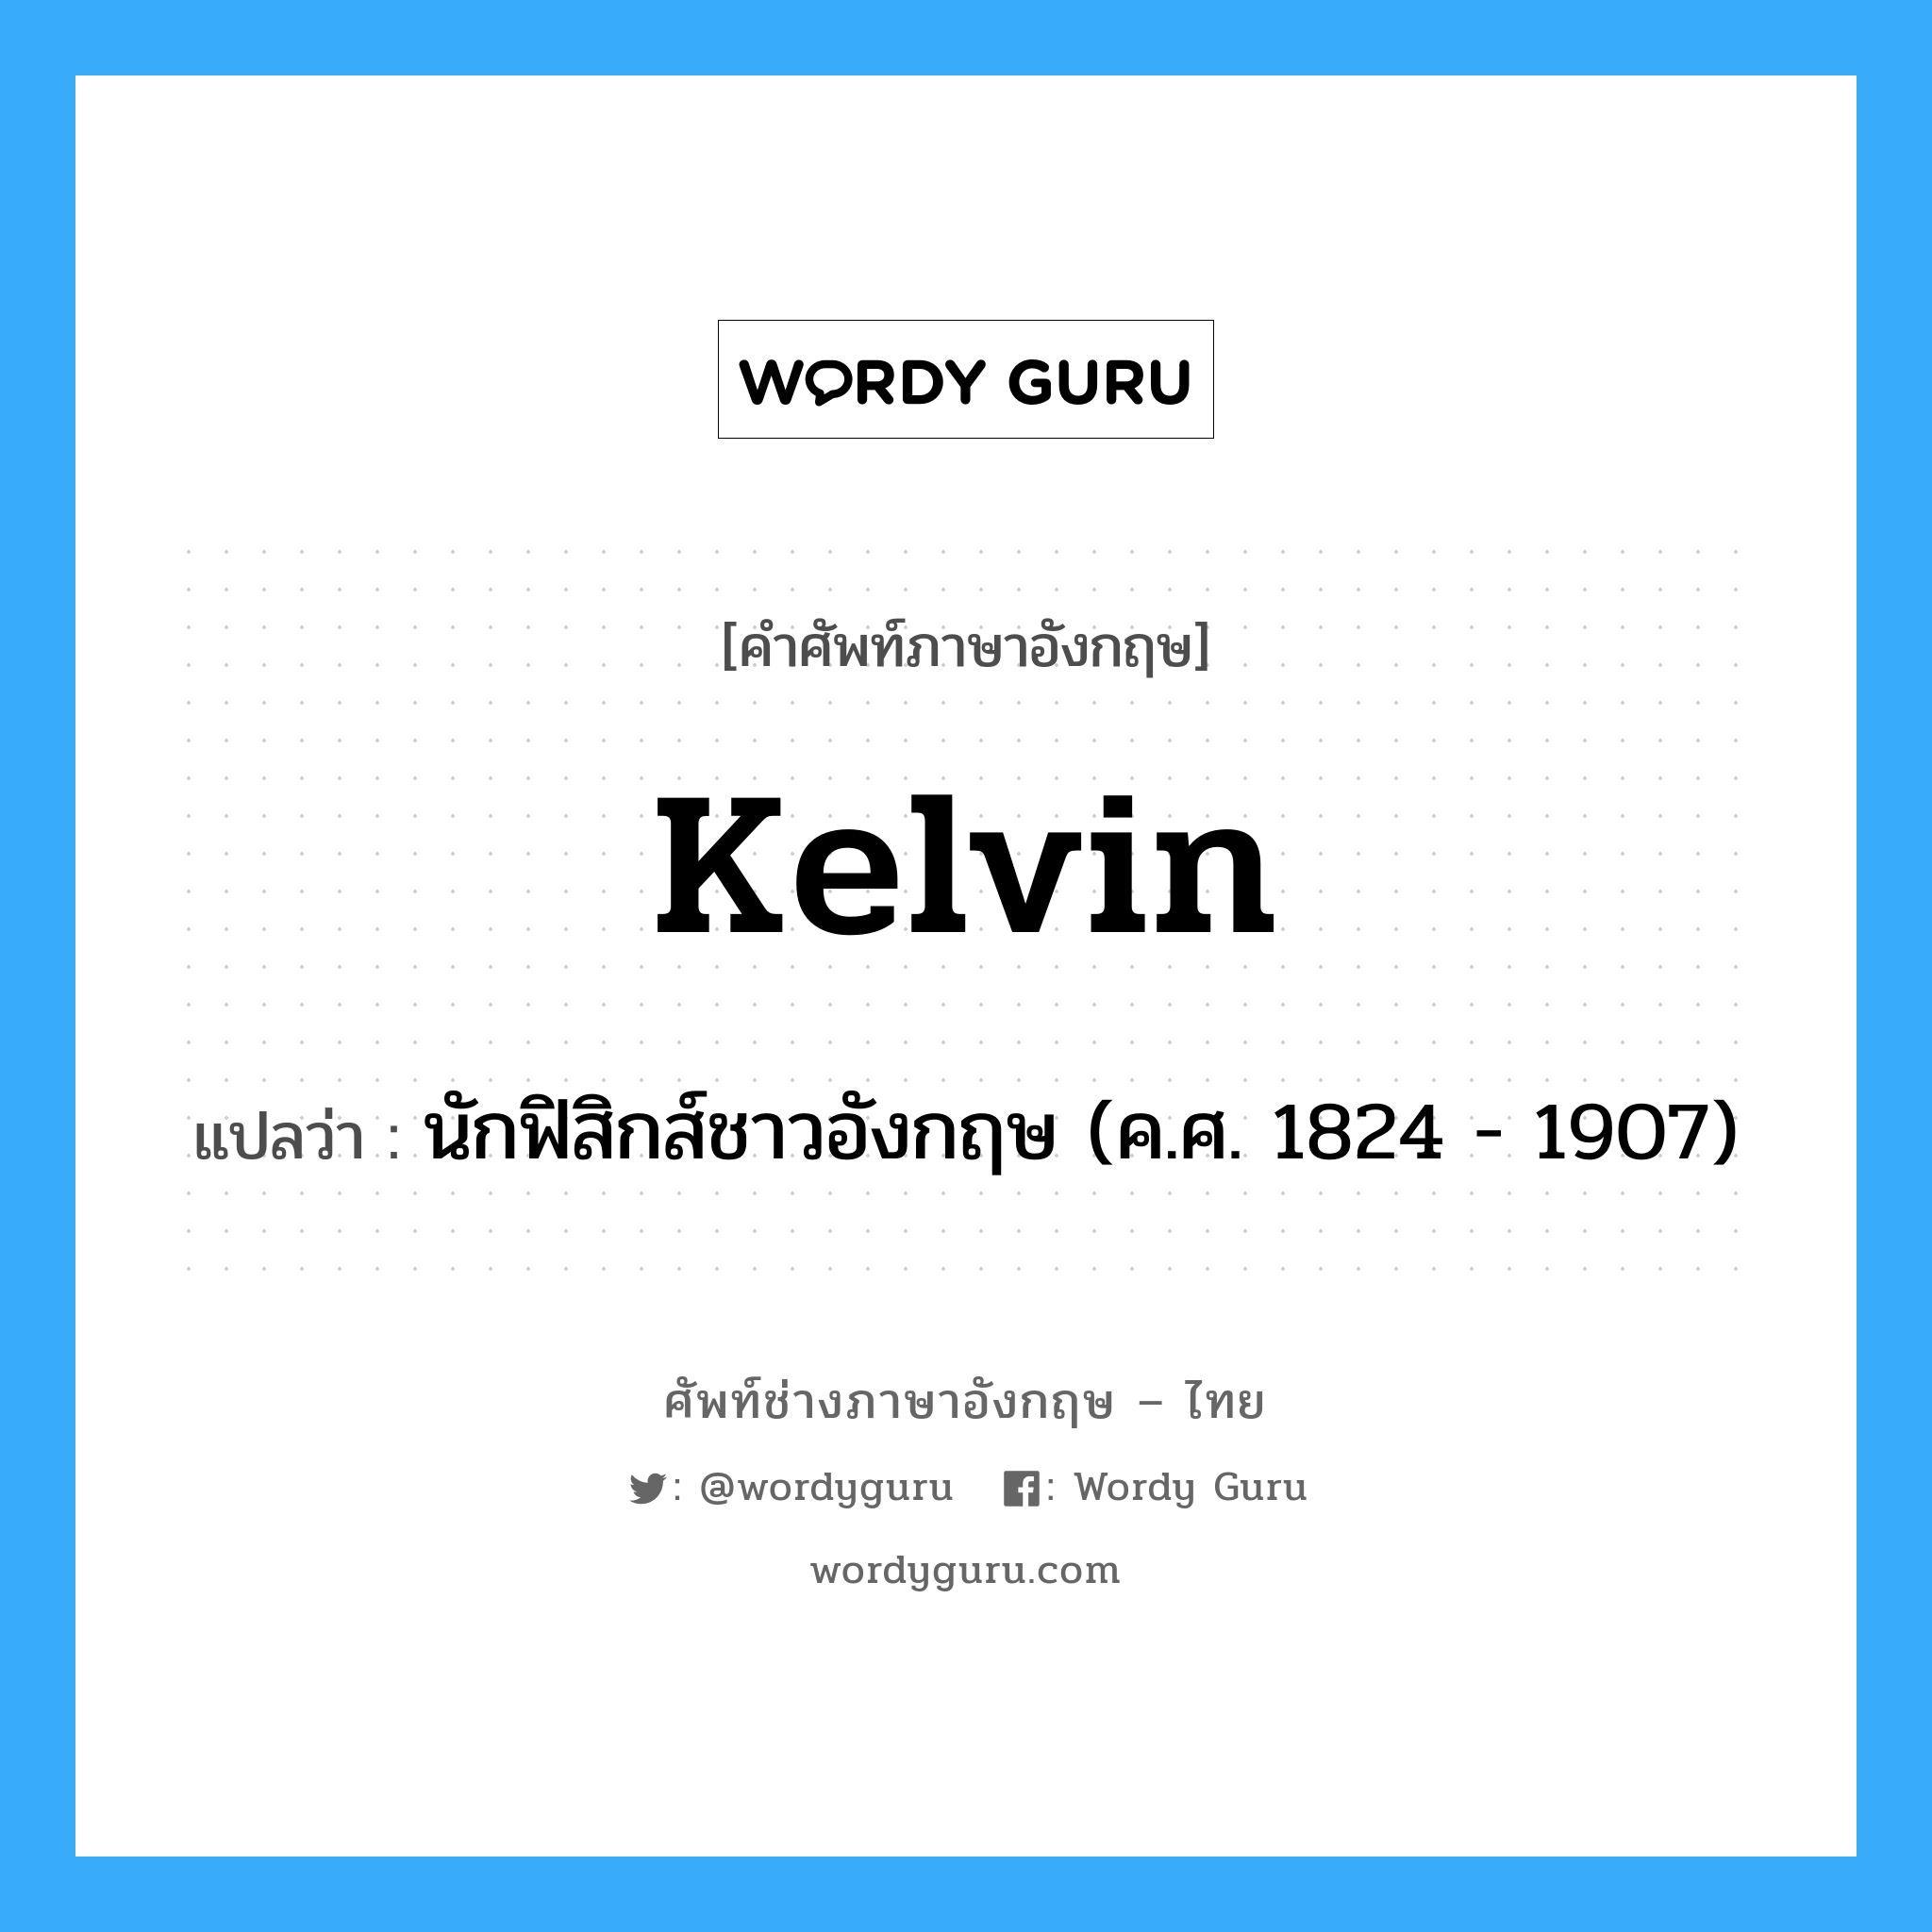 นักฟิสิกส์ชาวอังกฤษ (ค.ศ. 1824 - 1907) ภาษาอังกฤษ?, คำศัพท์ช่างภาษาอังกฤษ - ไทย นักฟิสิกส์ชาวอังกฤษ (ค.ศ. 1824 - 1907) คำศัพท์ภาษาอังกฤษ นักฟิสิกส์ชาวอังกฤษ (ค.ศ. 1824 - 1907) แปลว่า Kelvin